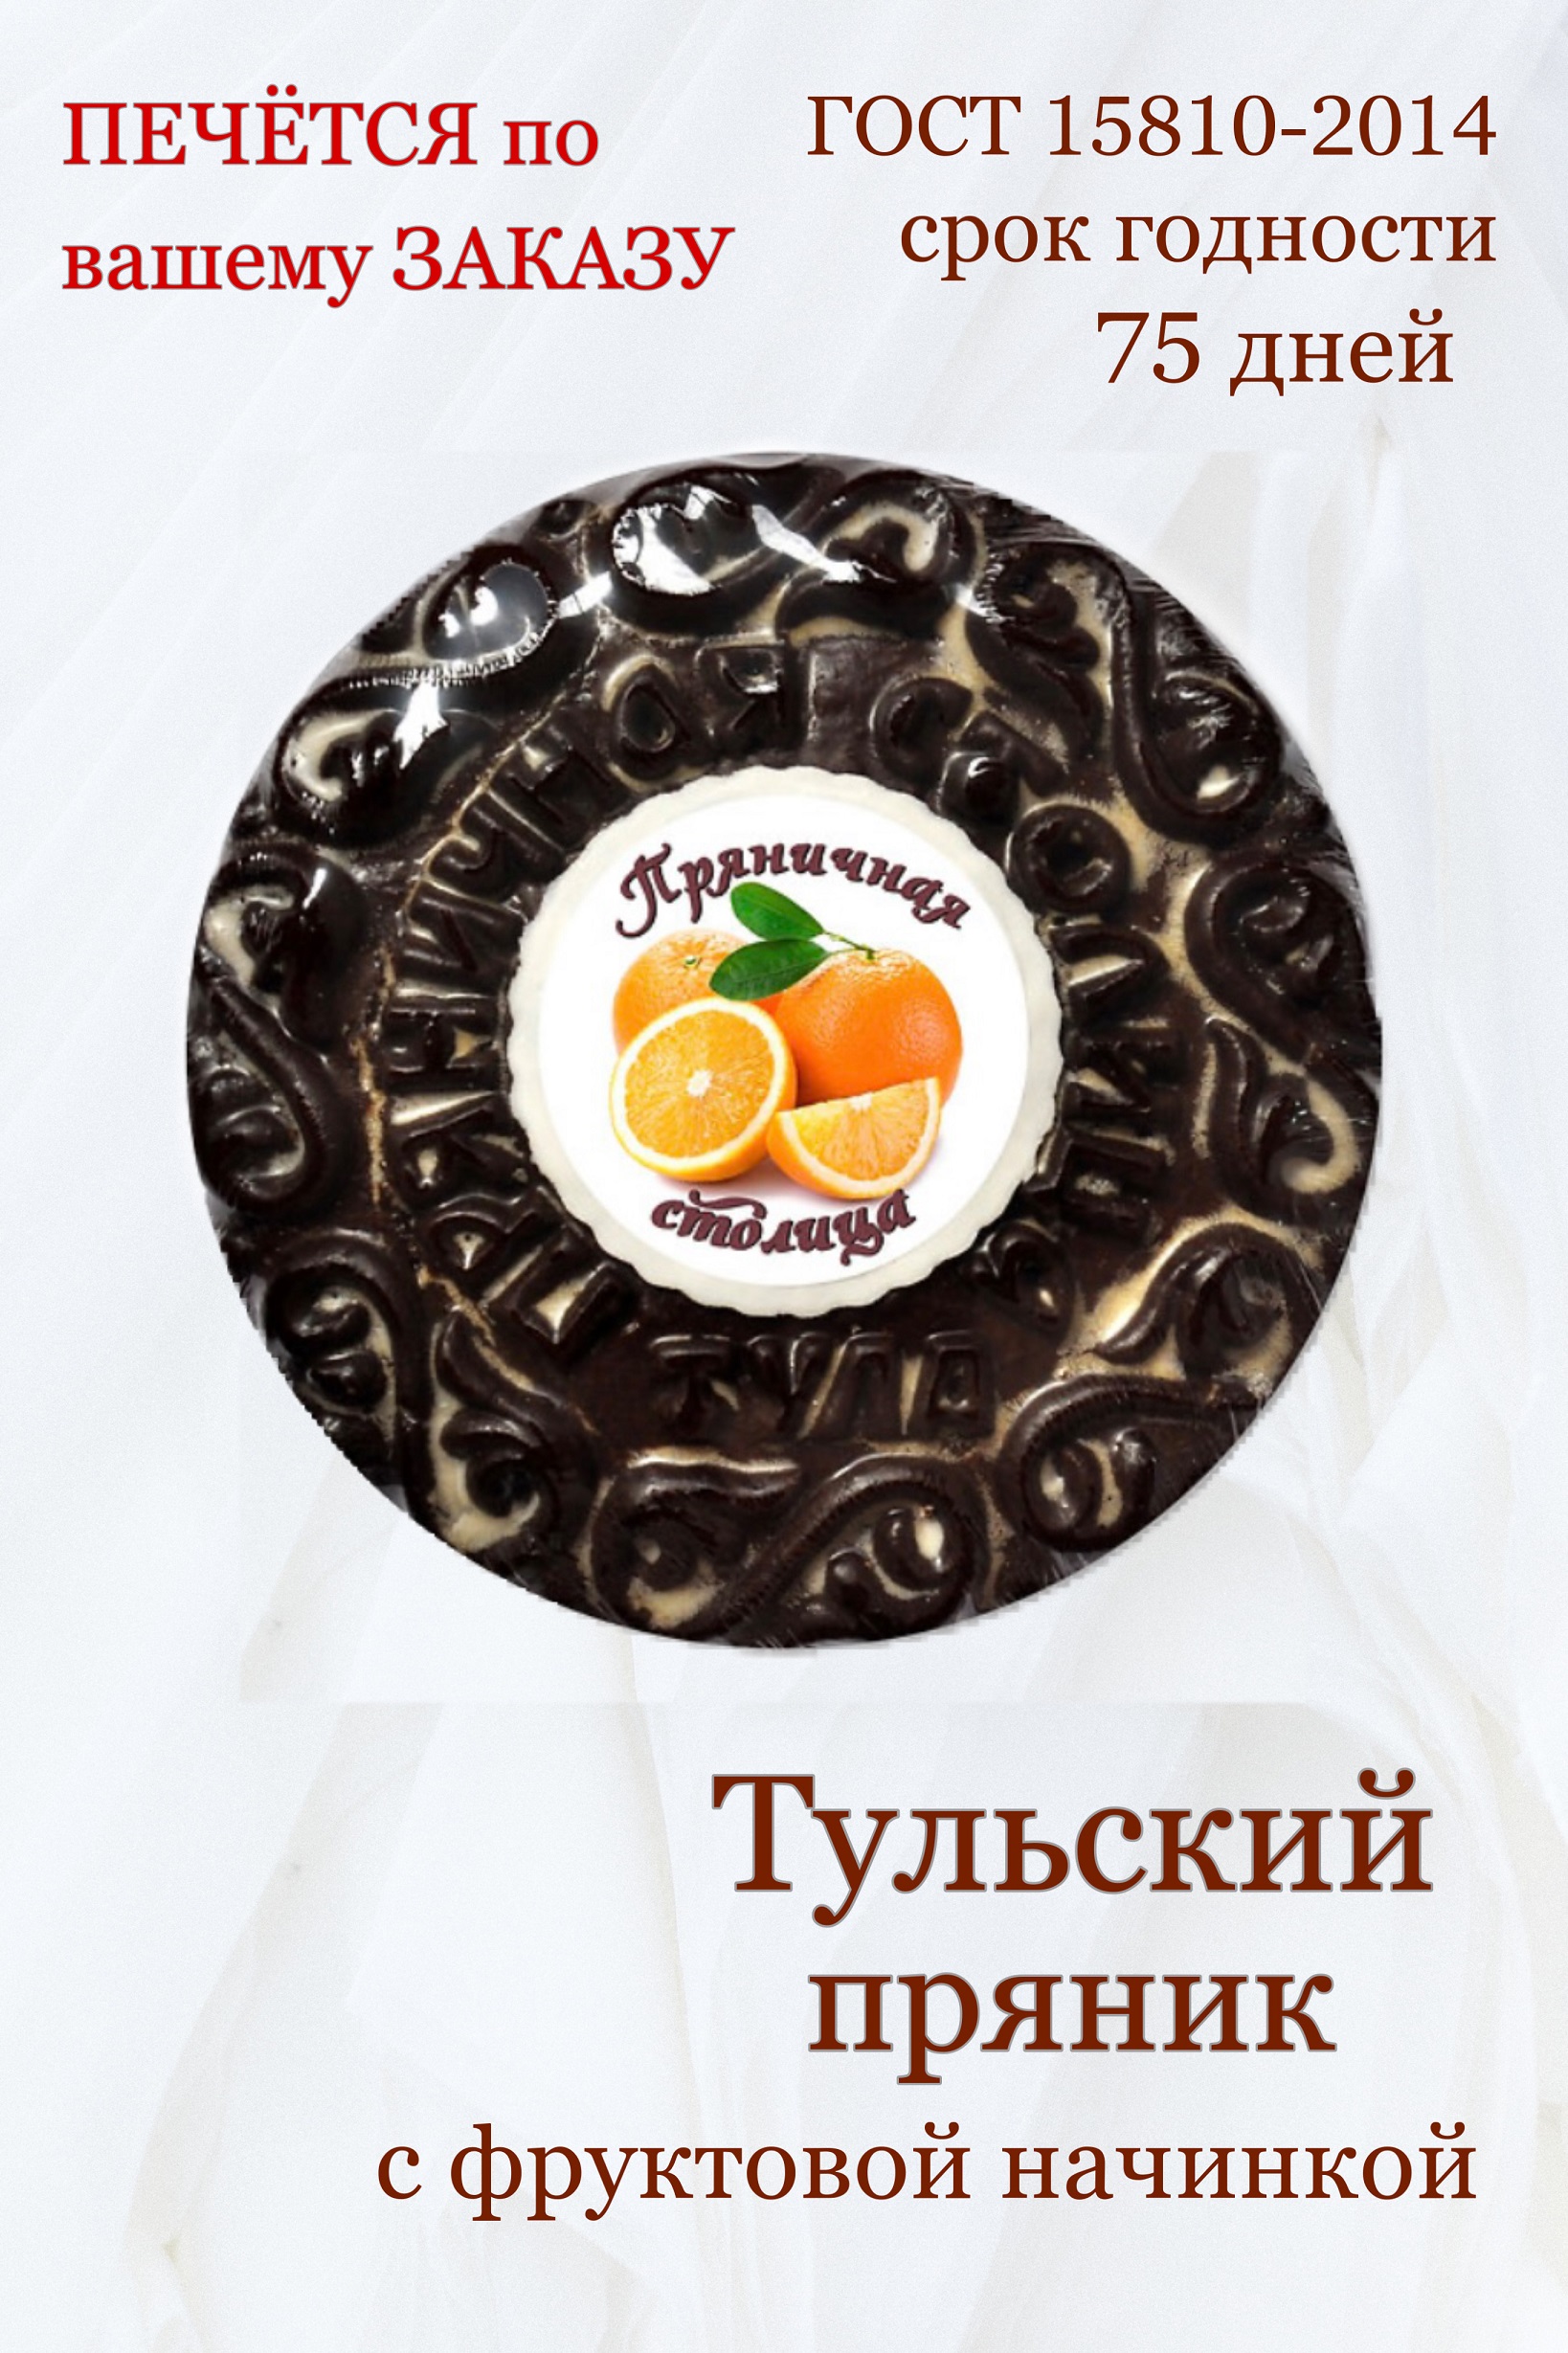 Пряники Пряничная столица глазированные заварные с фруктовой начинкой апельсин, 420 г